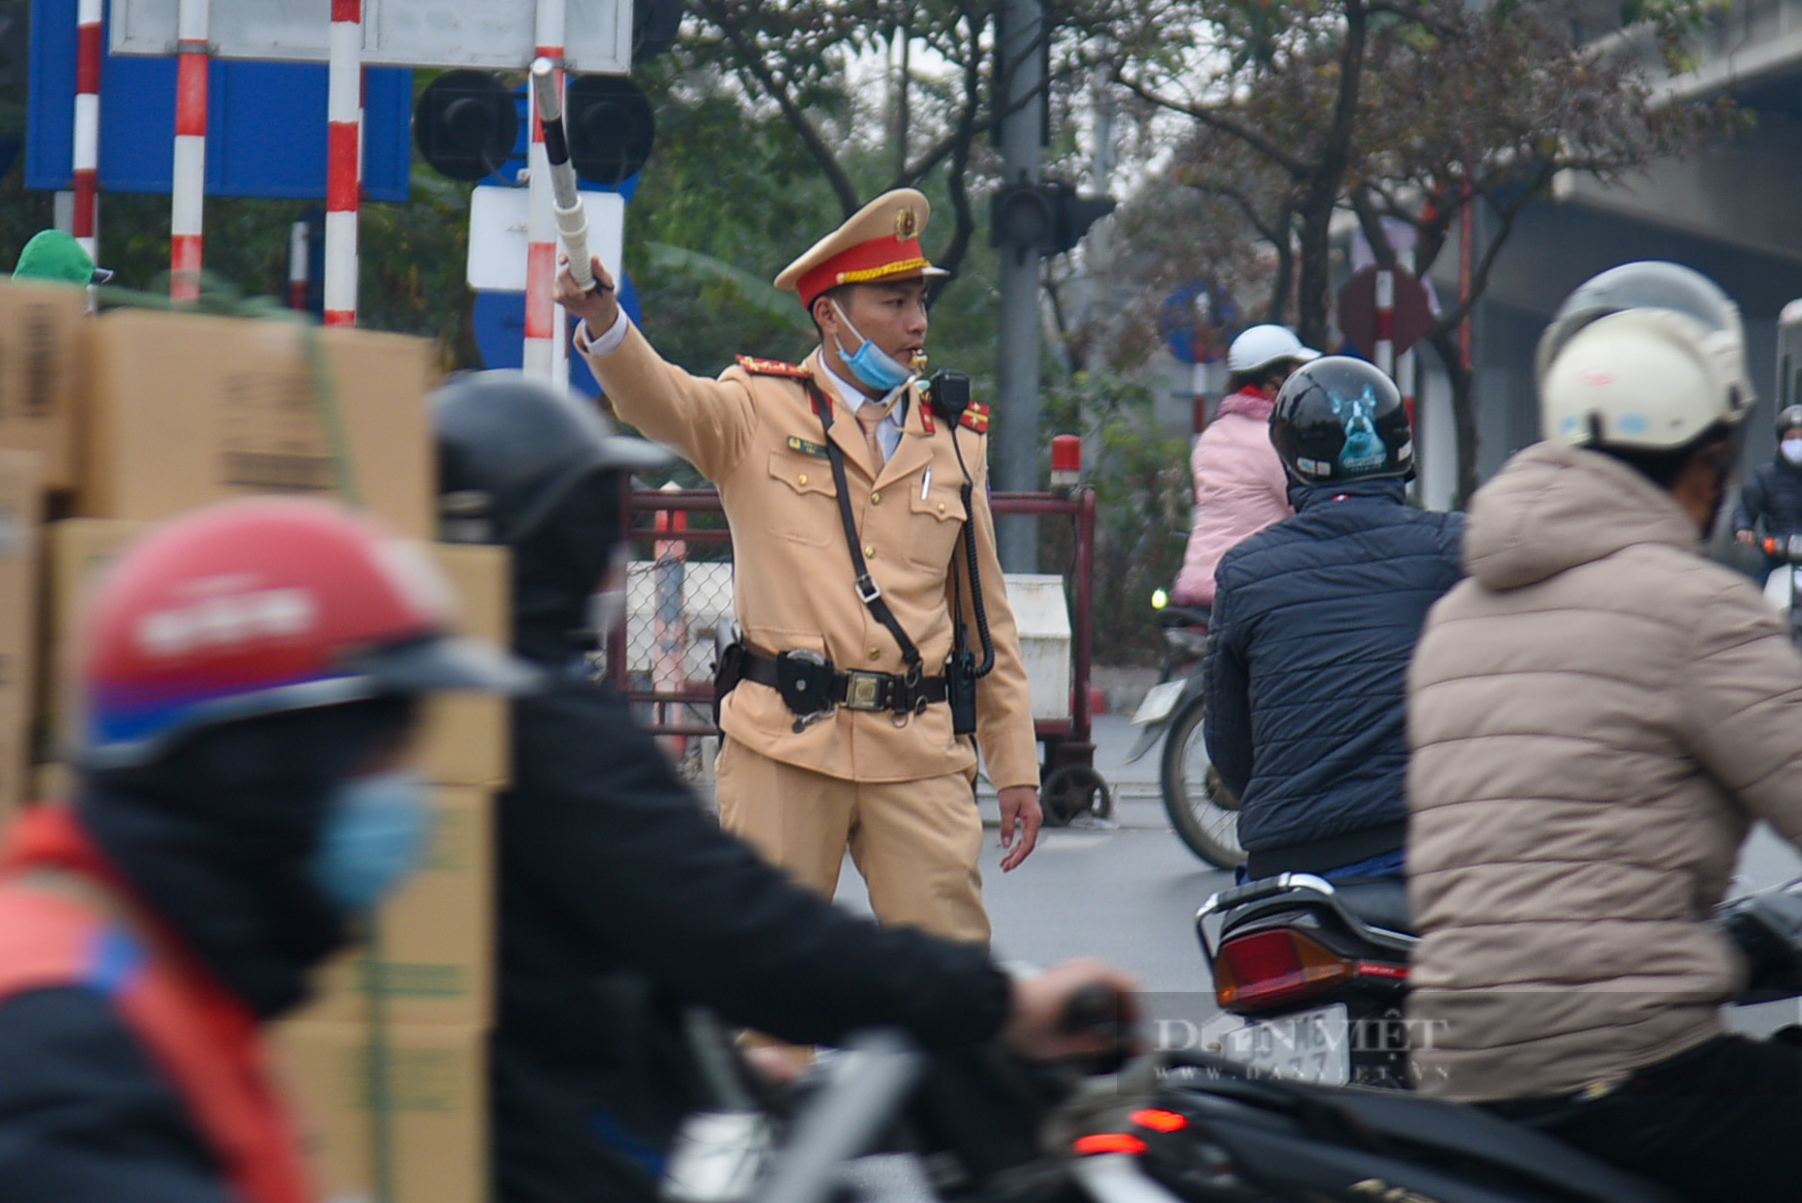 Người dân quay lại Hà Nội sau kỳ nghỉ lễ Tết dương, cửa ngõ Thủ đô ùn tắc kéo dài - Ảnh 11.